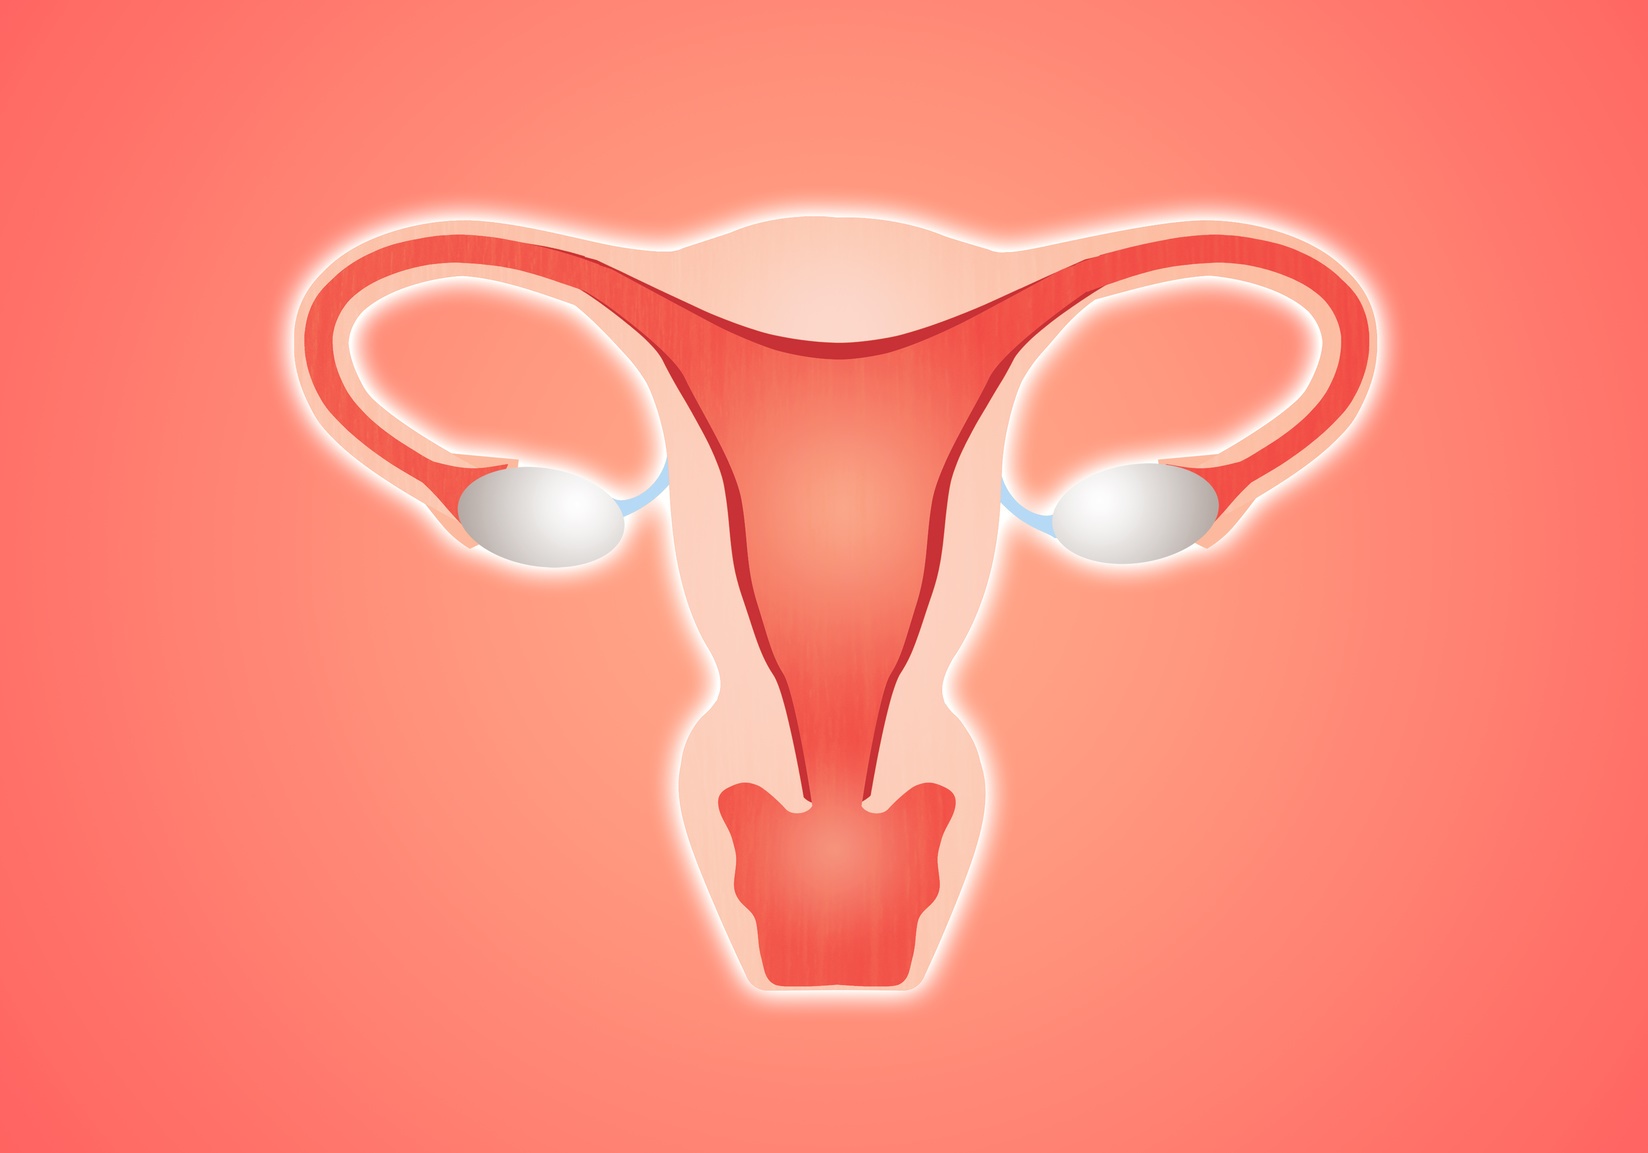 L’appareil reproducteur féminin compte deux ovaires. © sognolucido, Fotolia